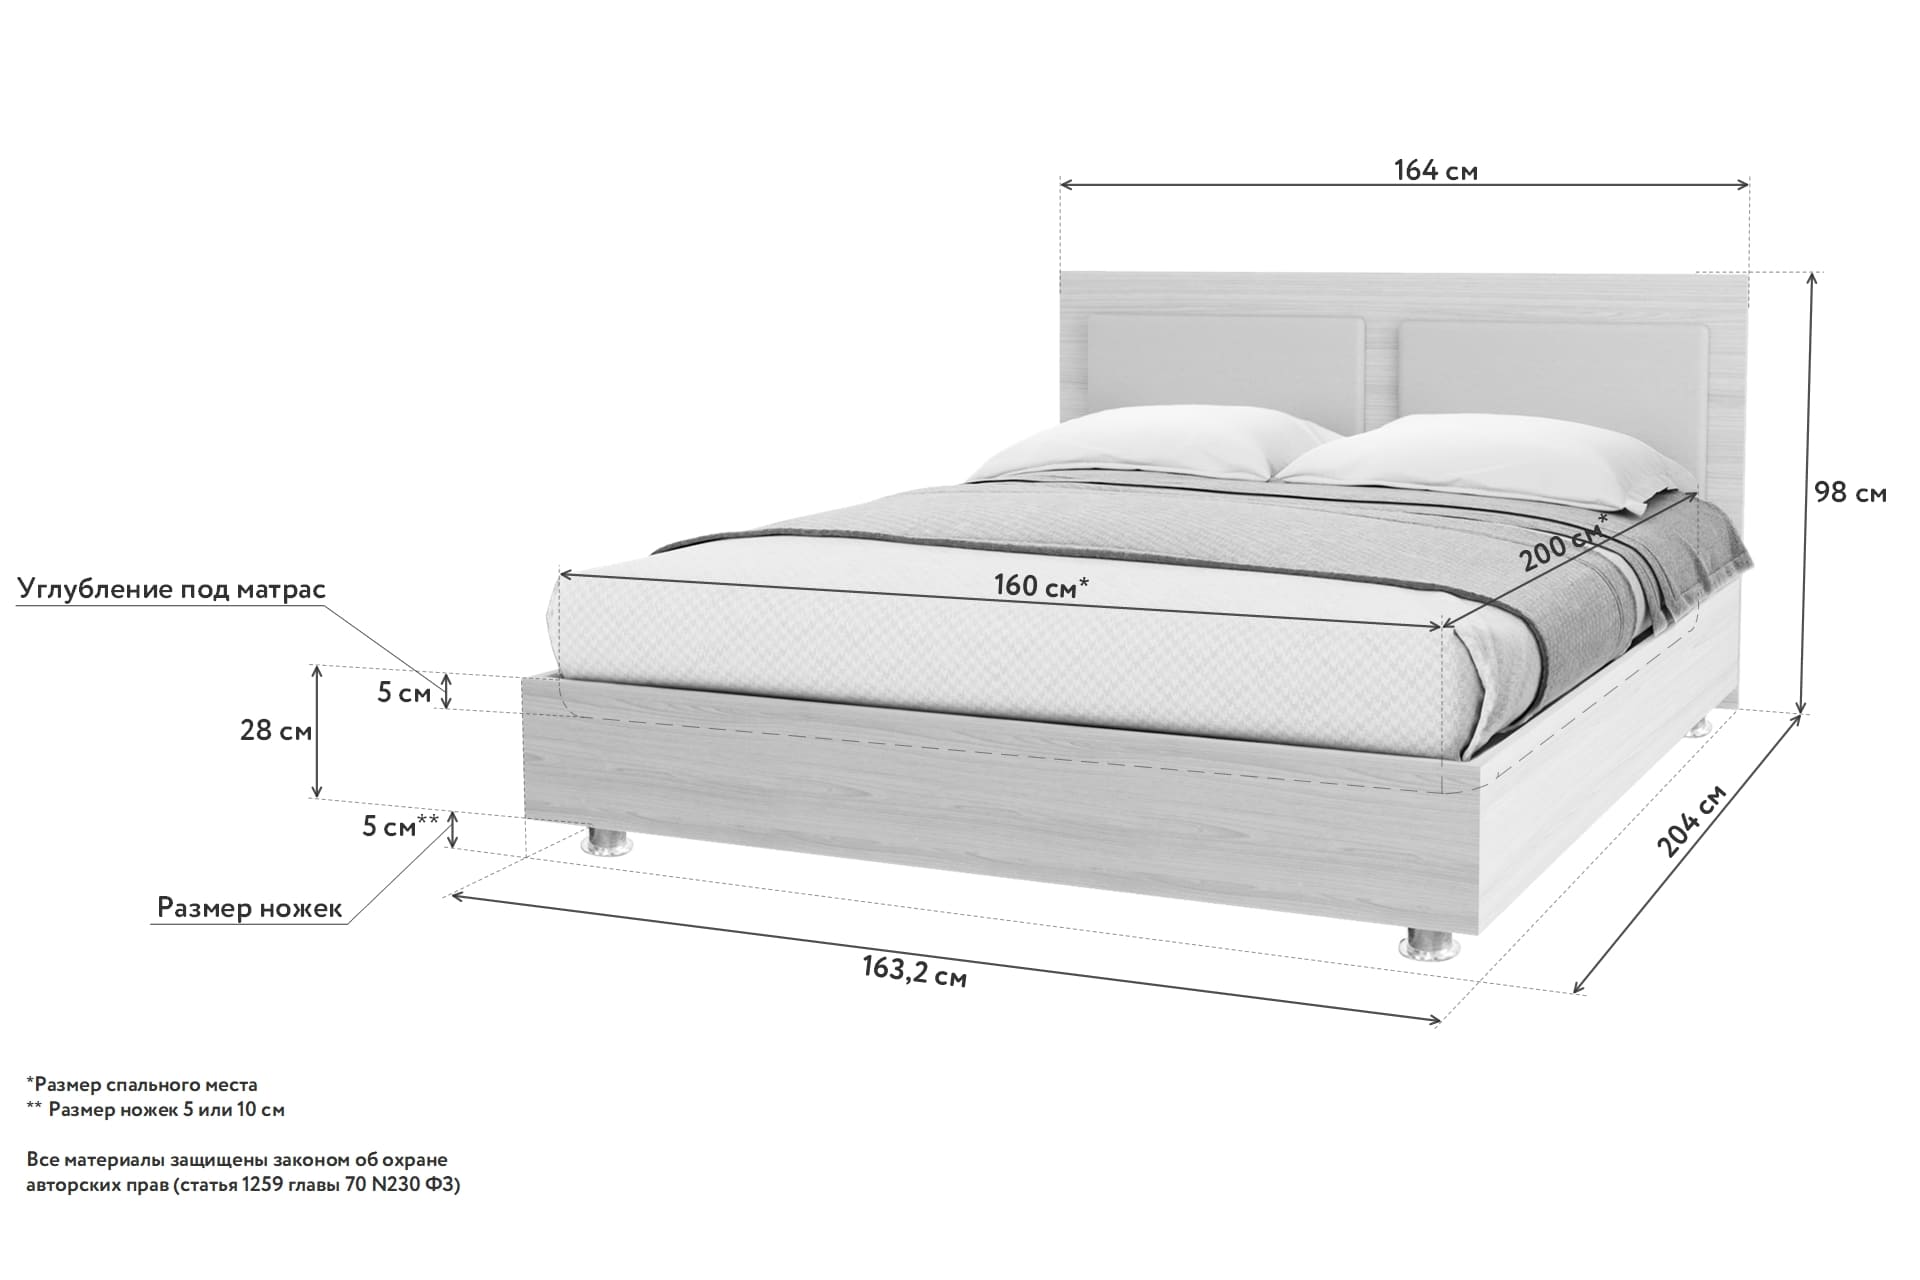 минимальный размер двуспальной кровати